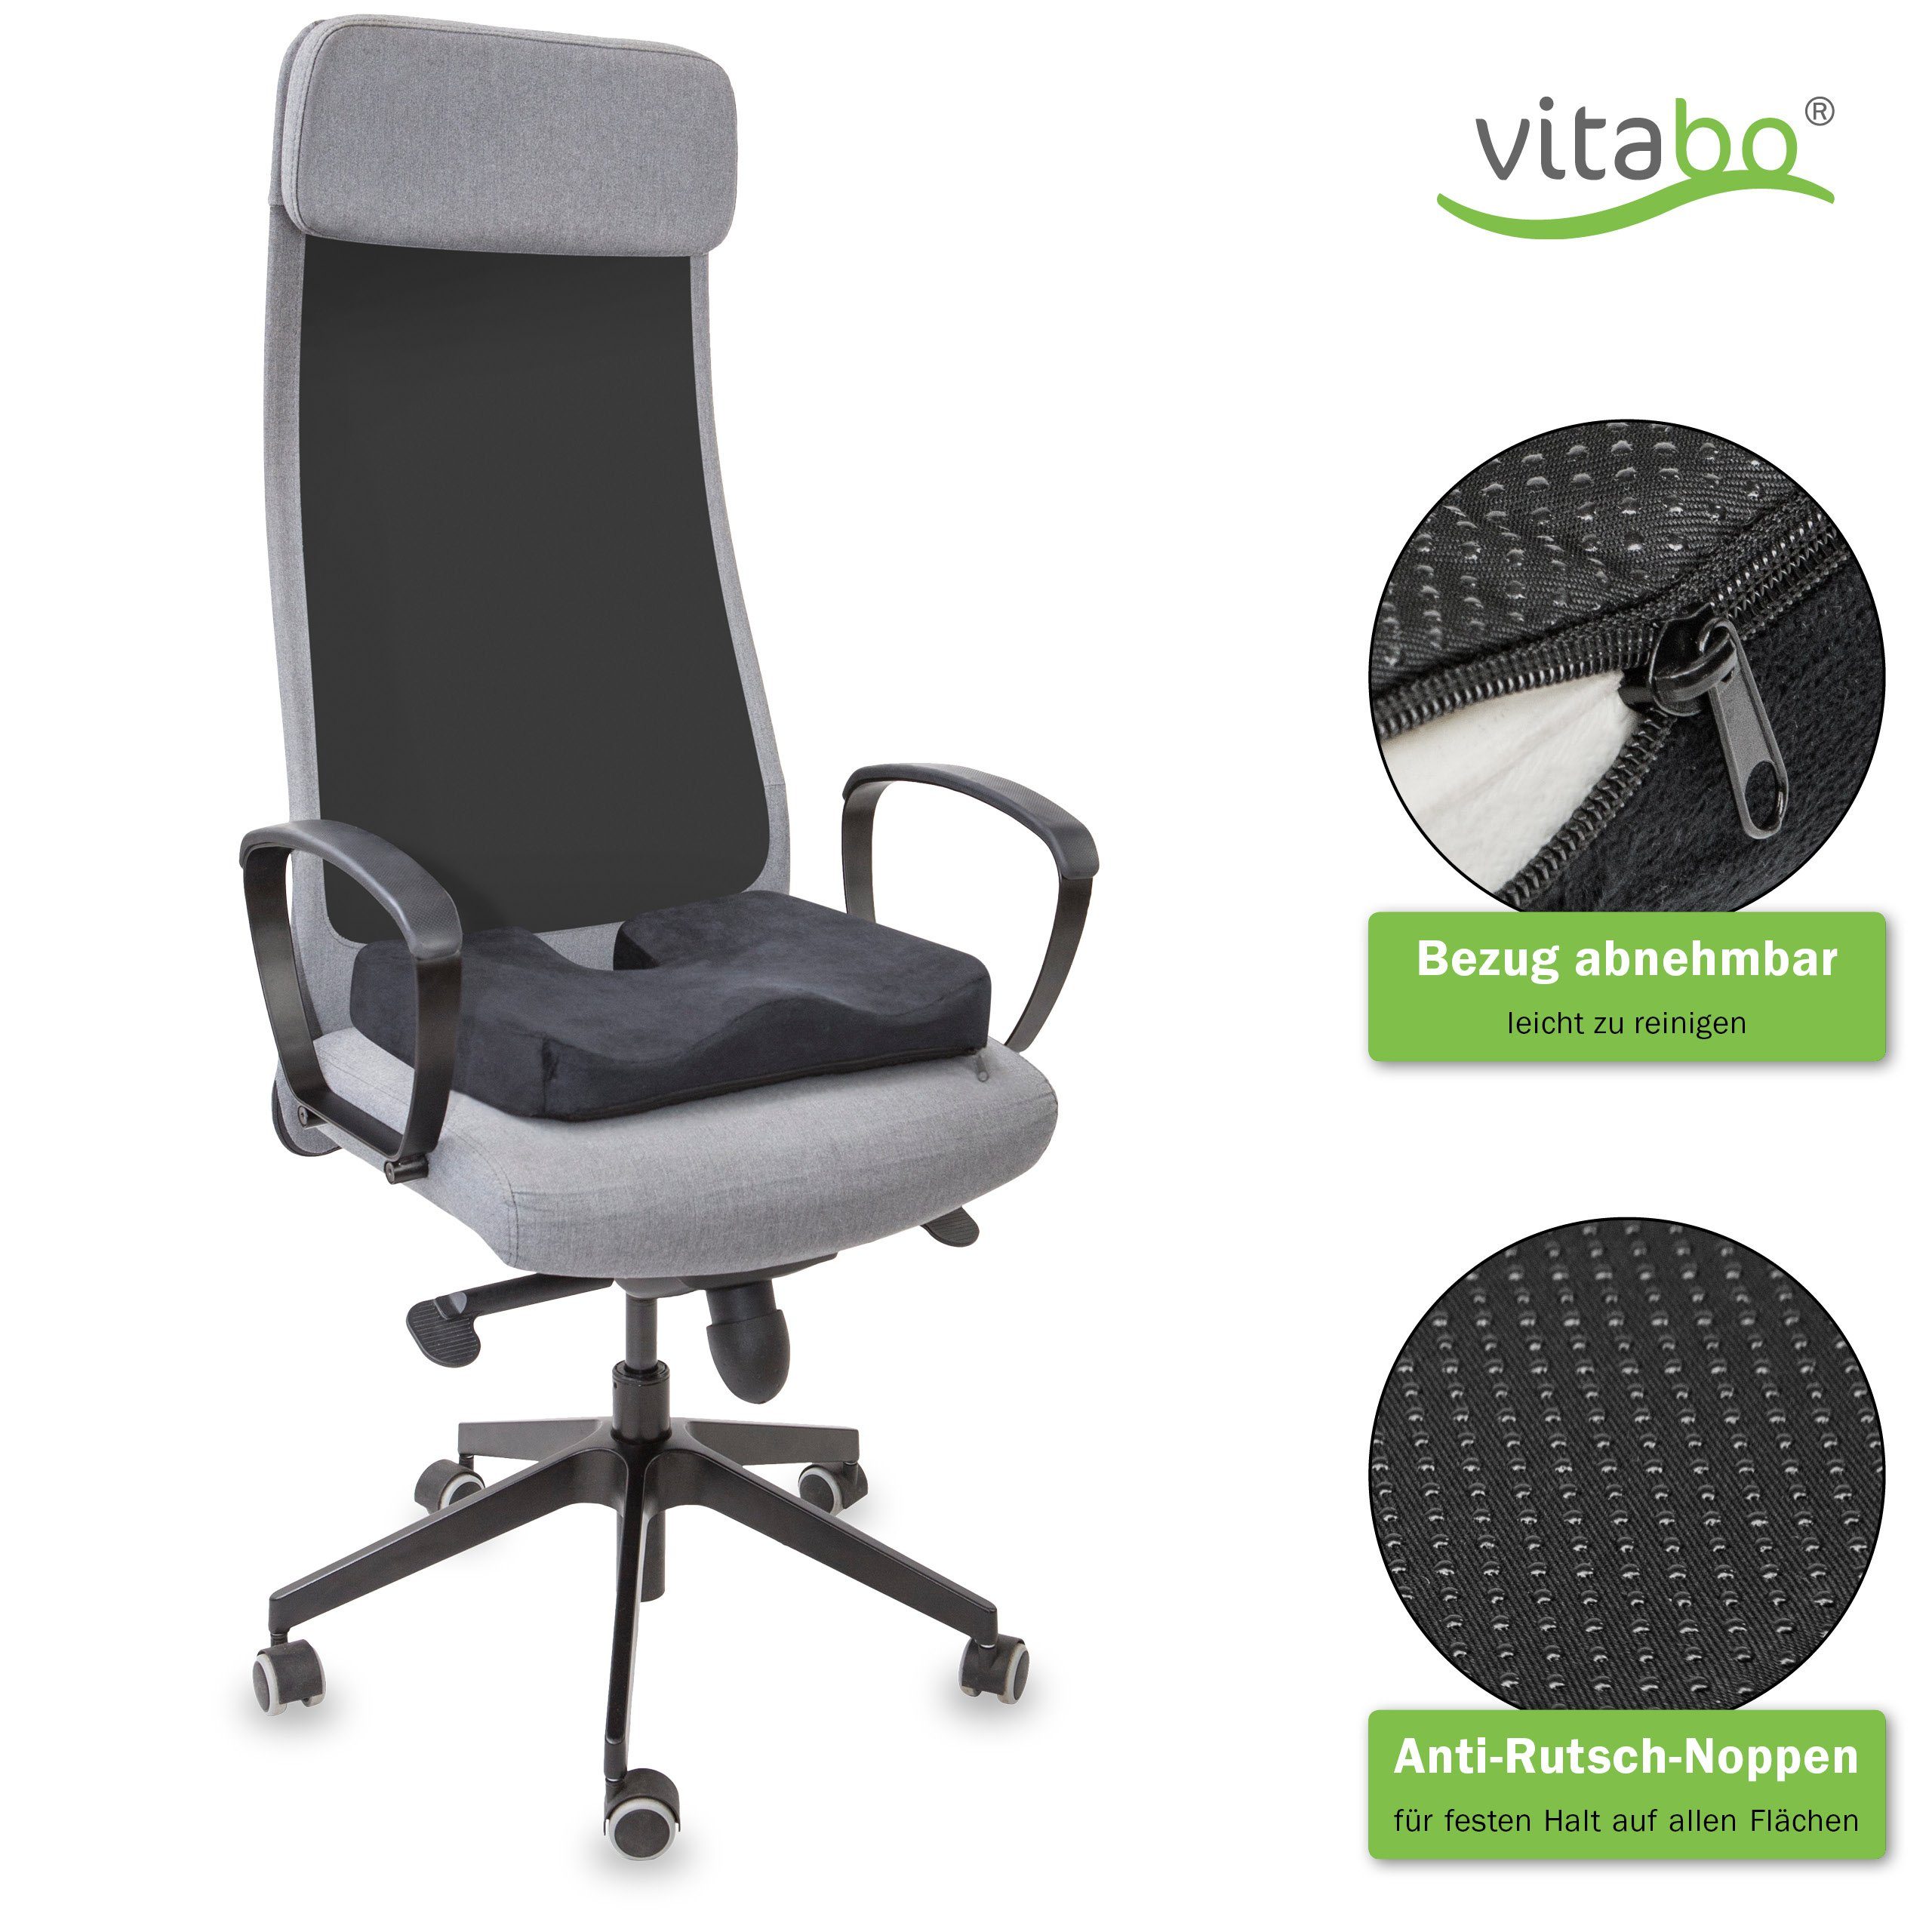 Vitabo Sitzkissen Vitabo ergonomisch geformtes Sitzkissen